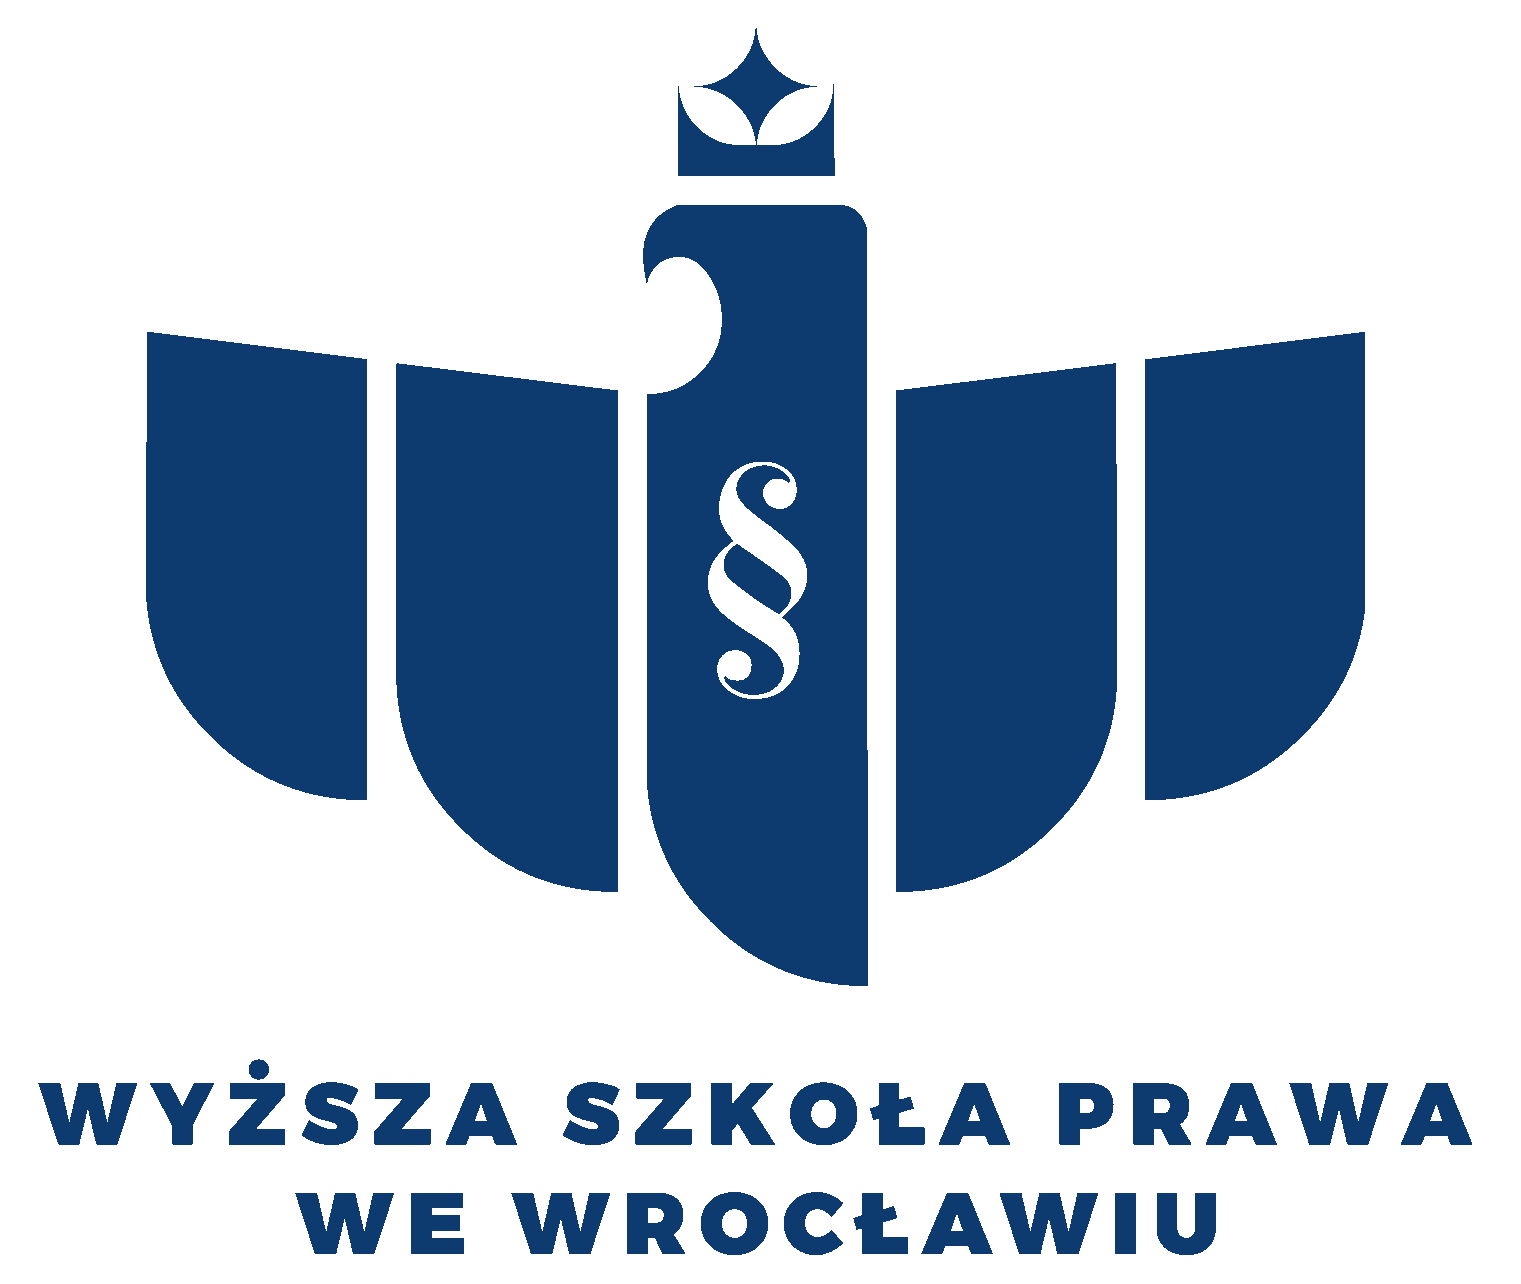 Logo Wyższa Szkoła Prawa (WSP) we Wrocławiu